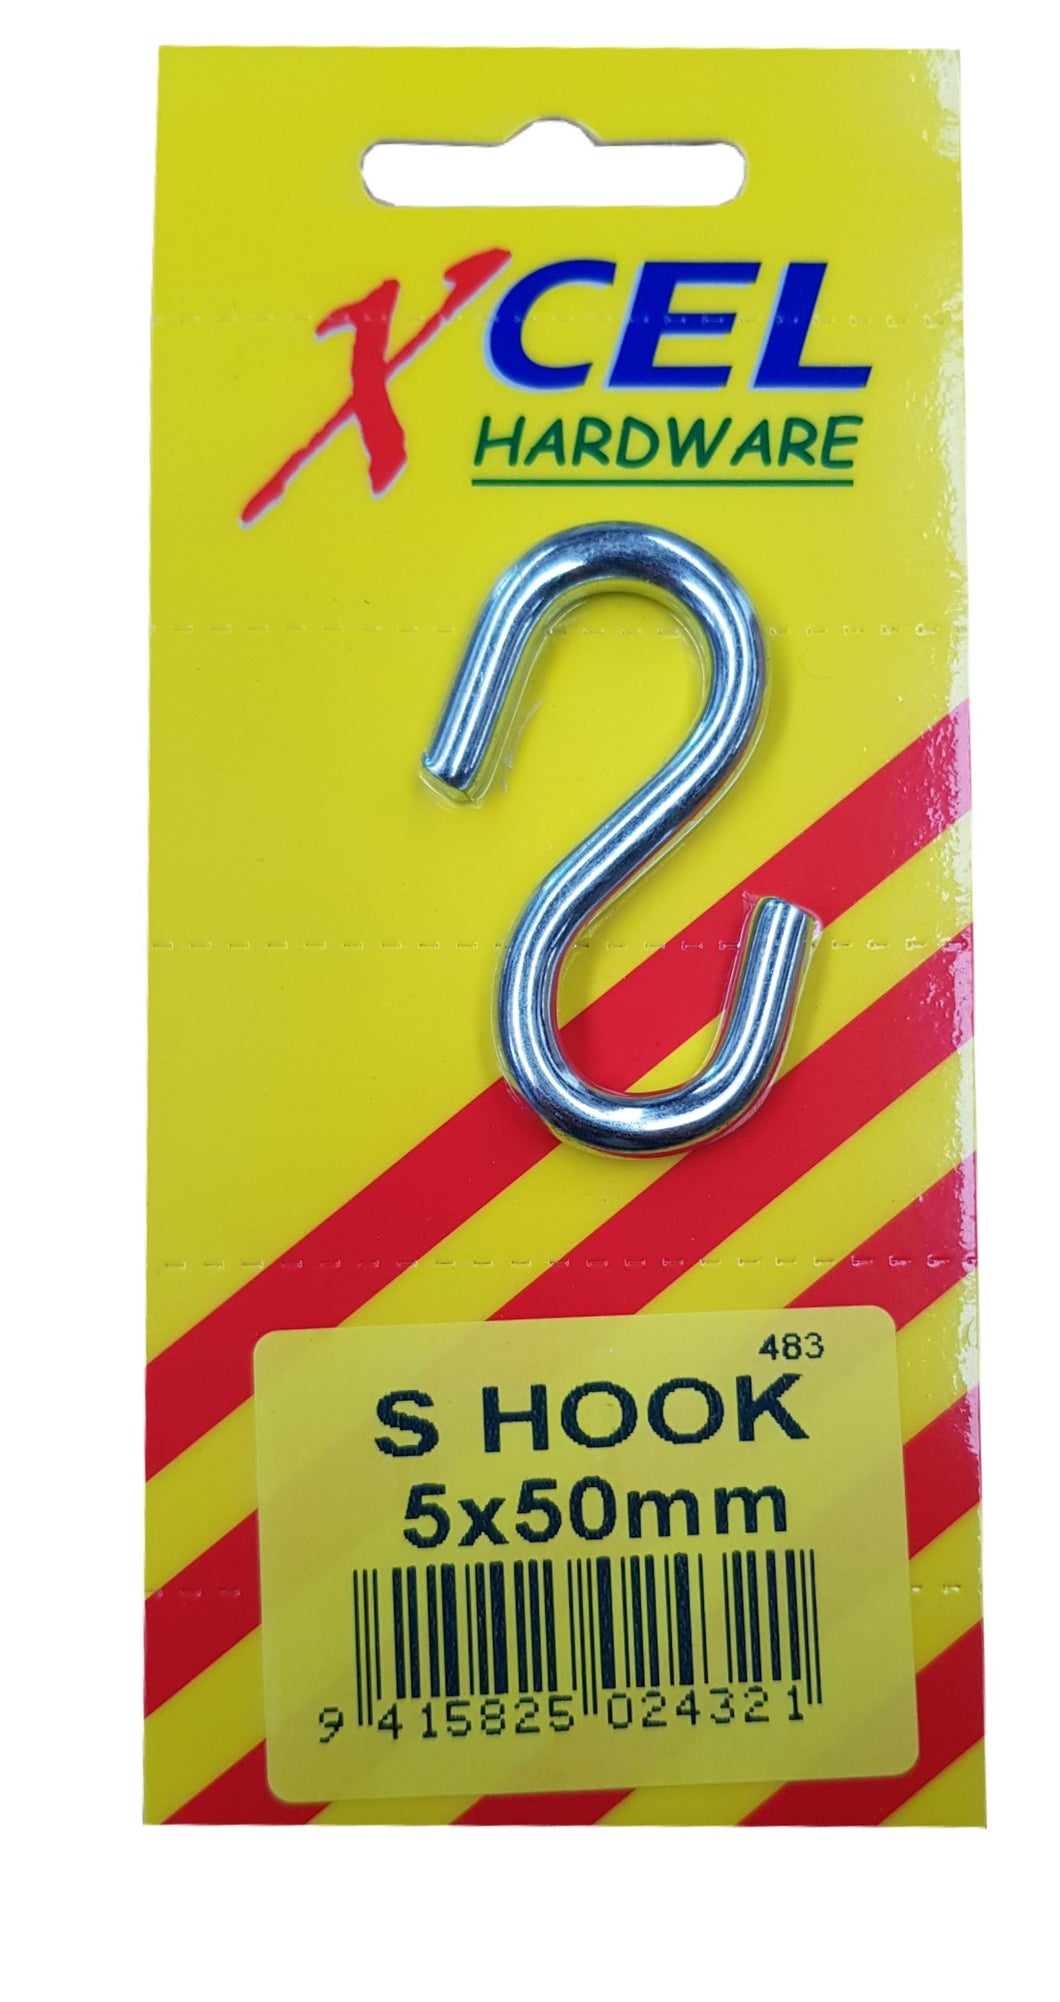 S-Hook ZP 5mm x 50mm Carded Xcel